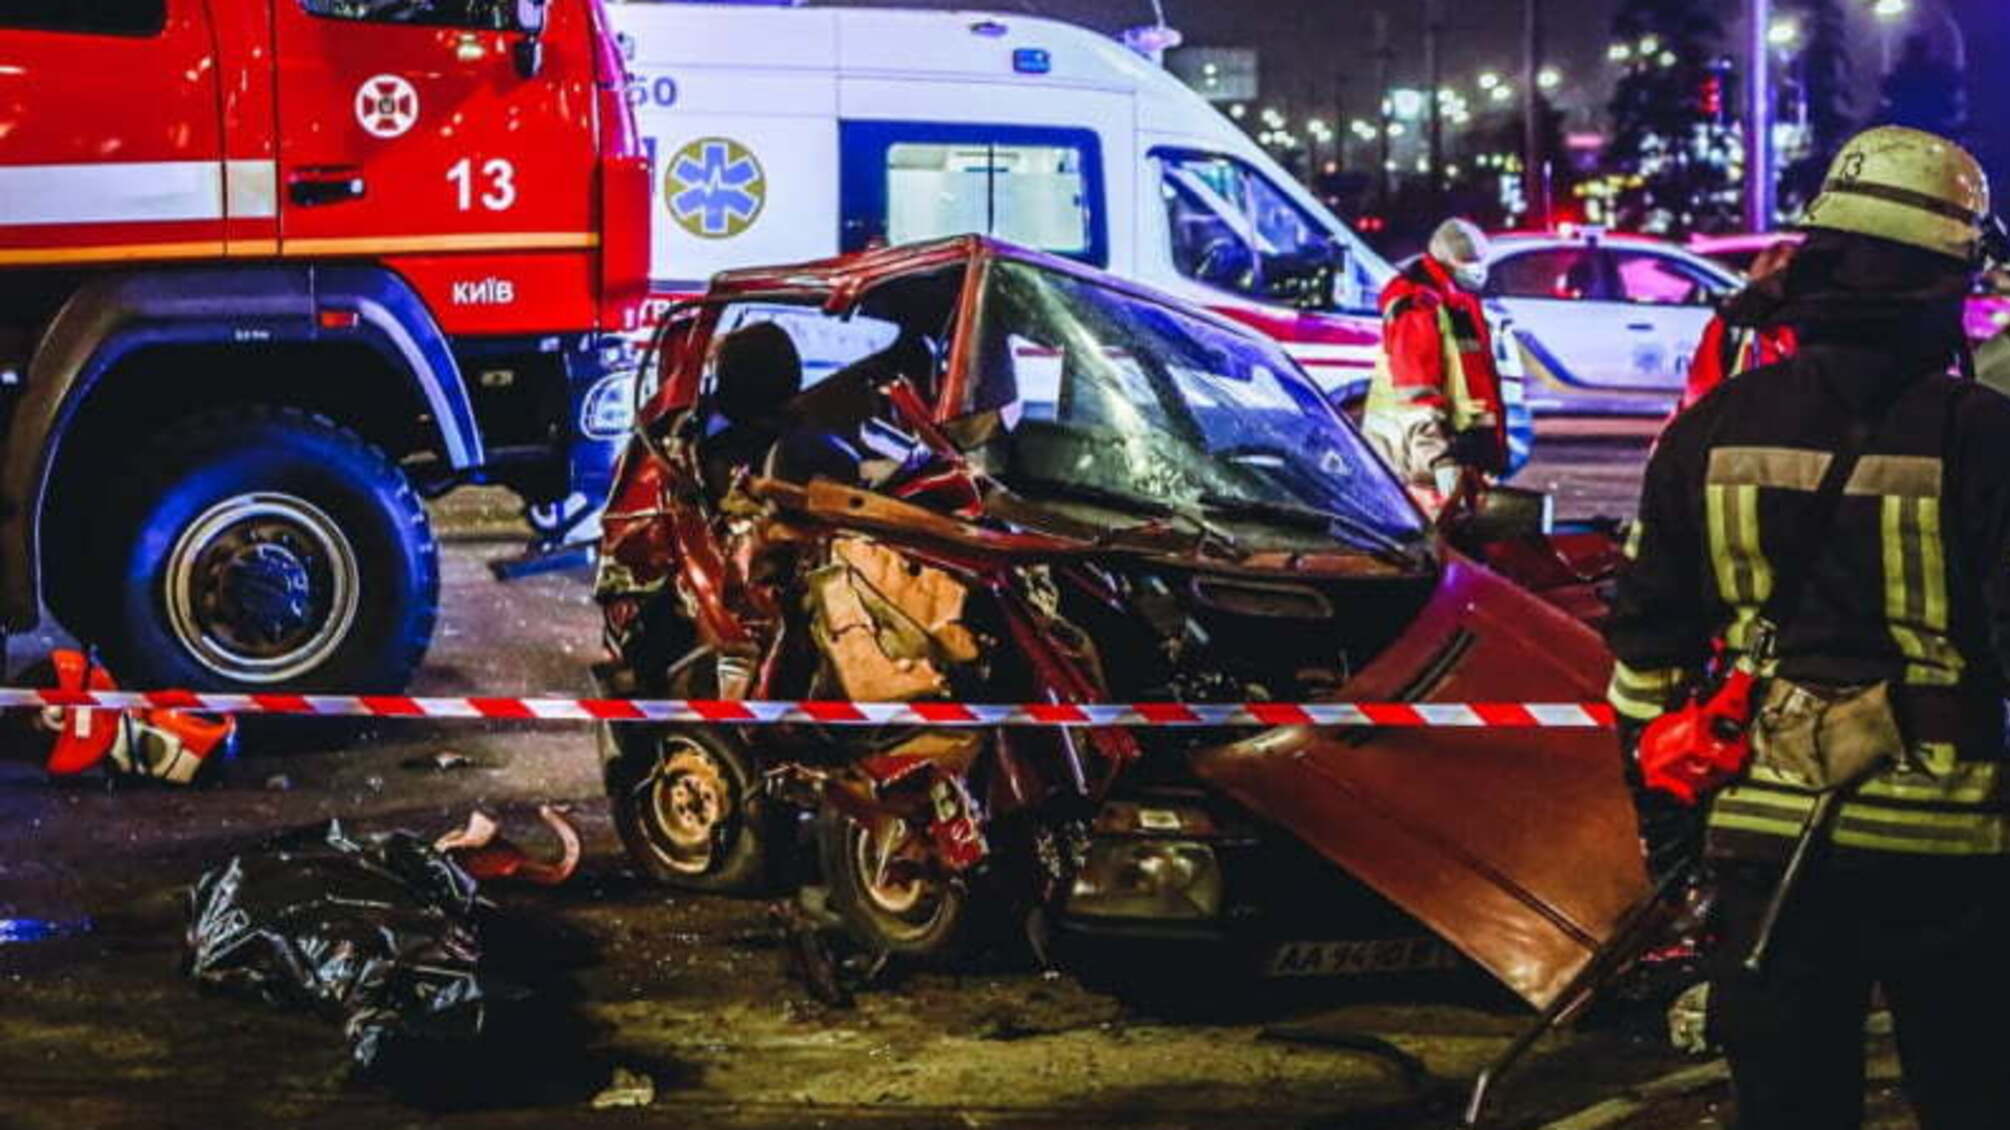 Київ: внаслідок дорожньо-транспортної пригоди загинуло двоє людей